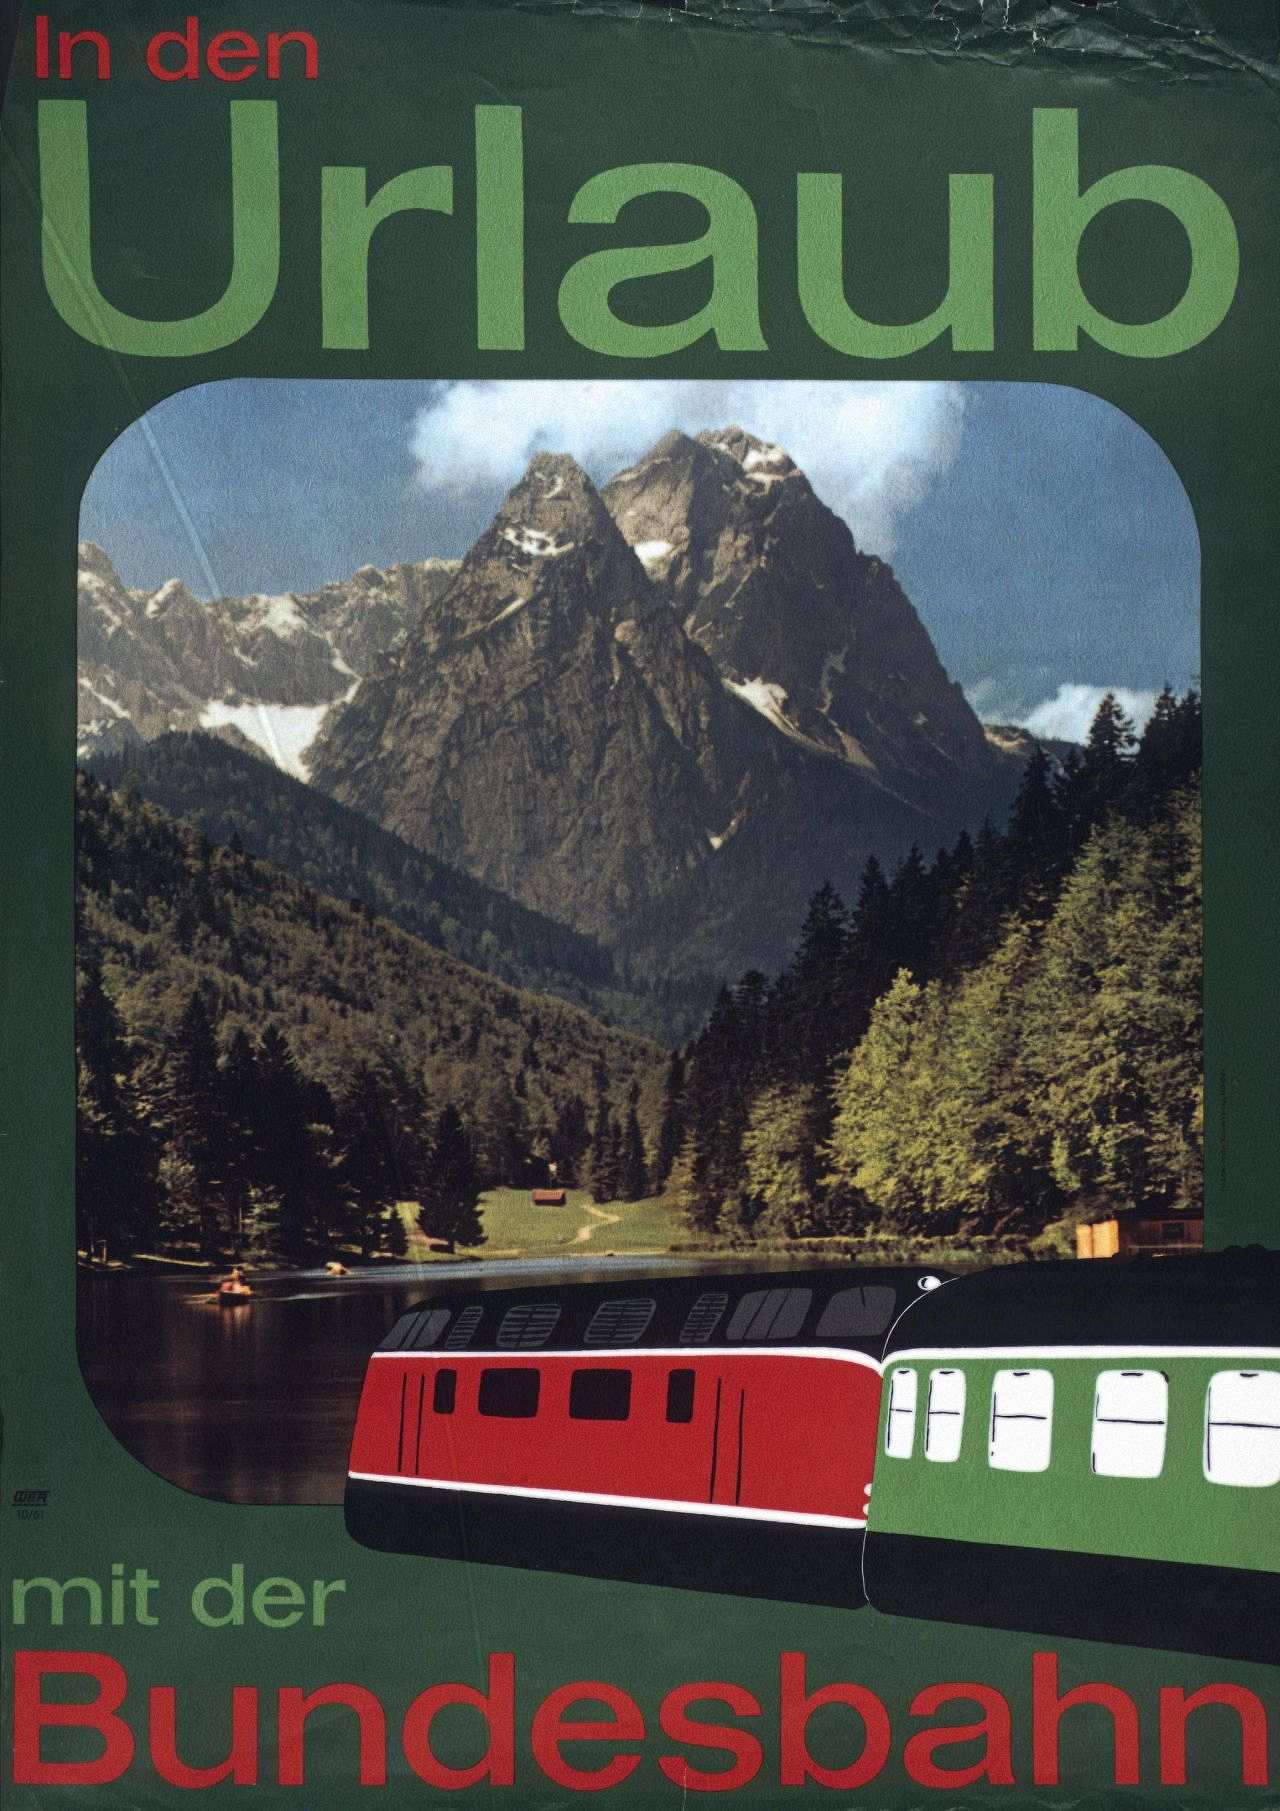 Mit diesem Plakat wirbt die Bundesbahn für Urlaubsreisen mit der Bahn.